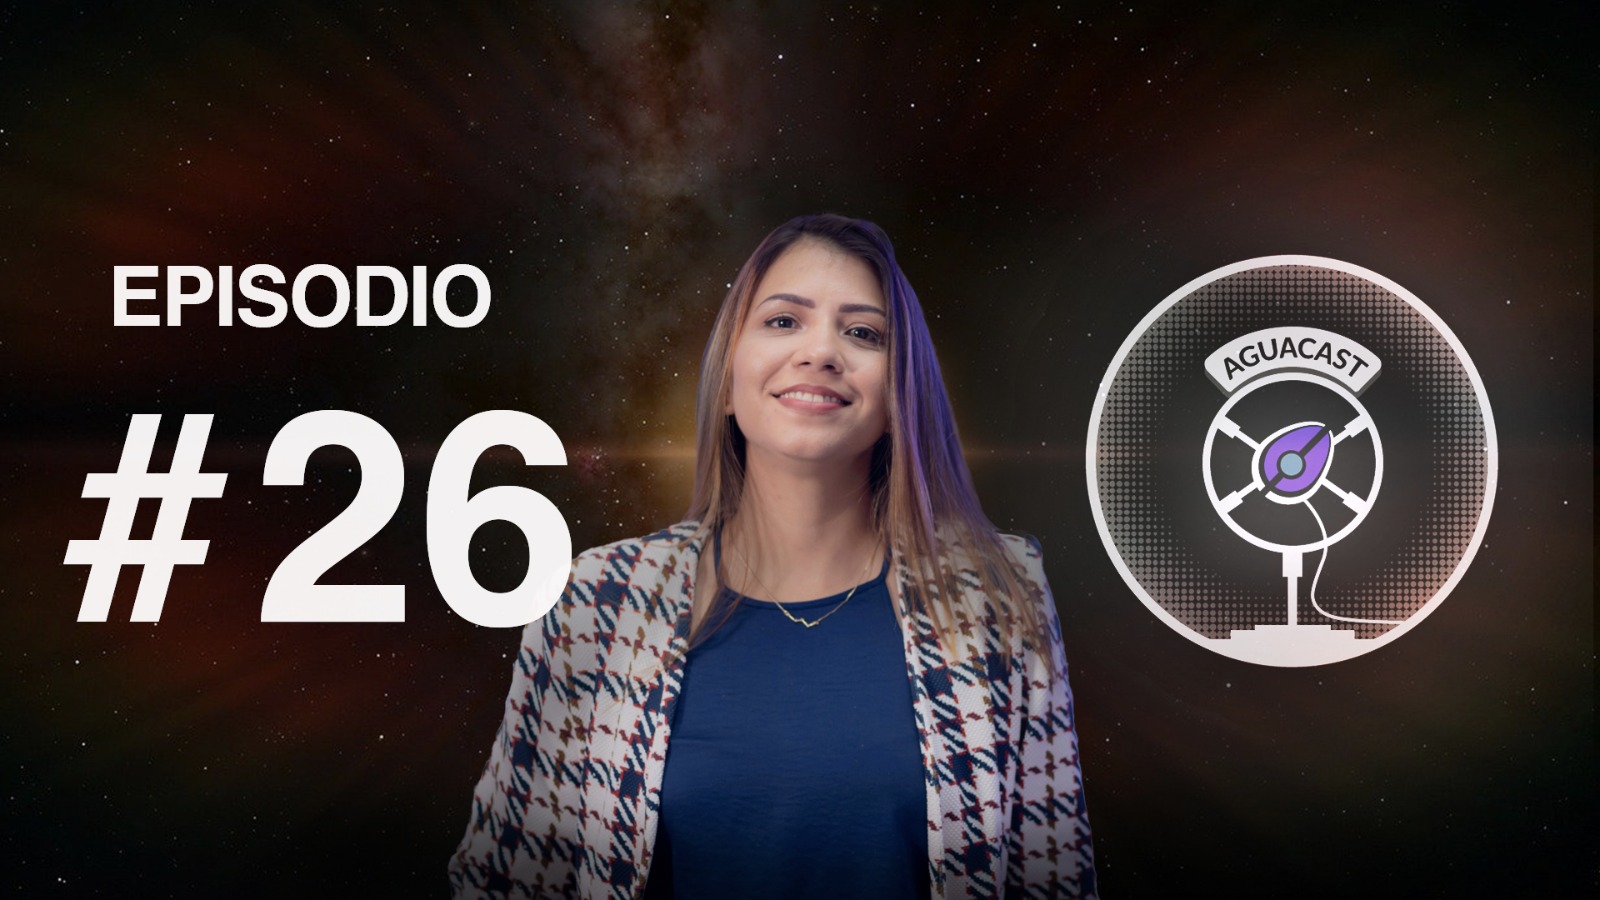 Lauren Flor, astrónoma colombiana que estudia estrellas huéspedes de exoplanetas